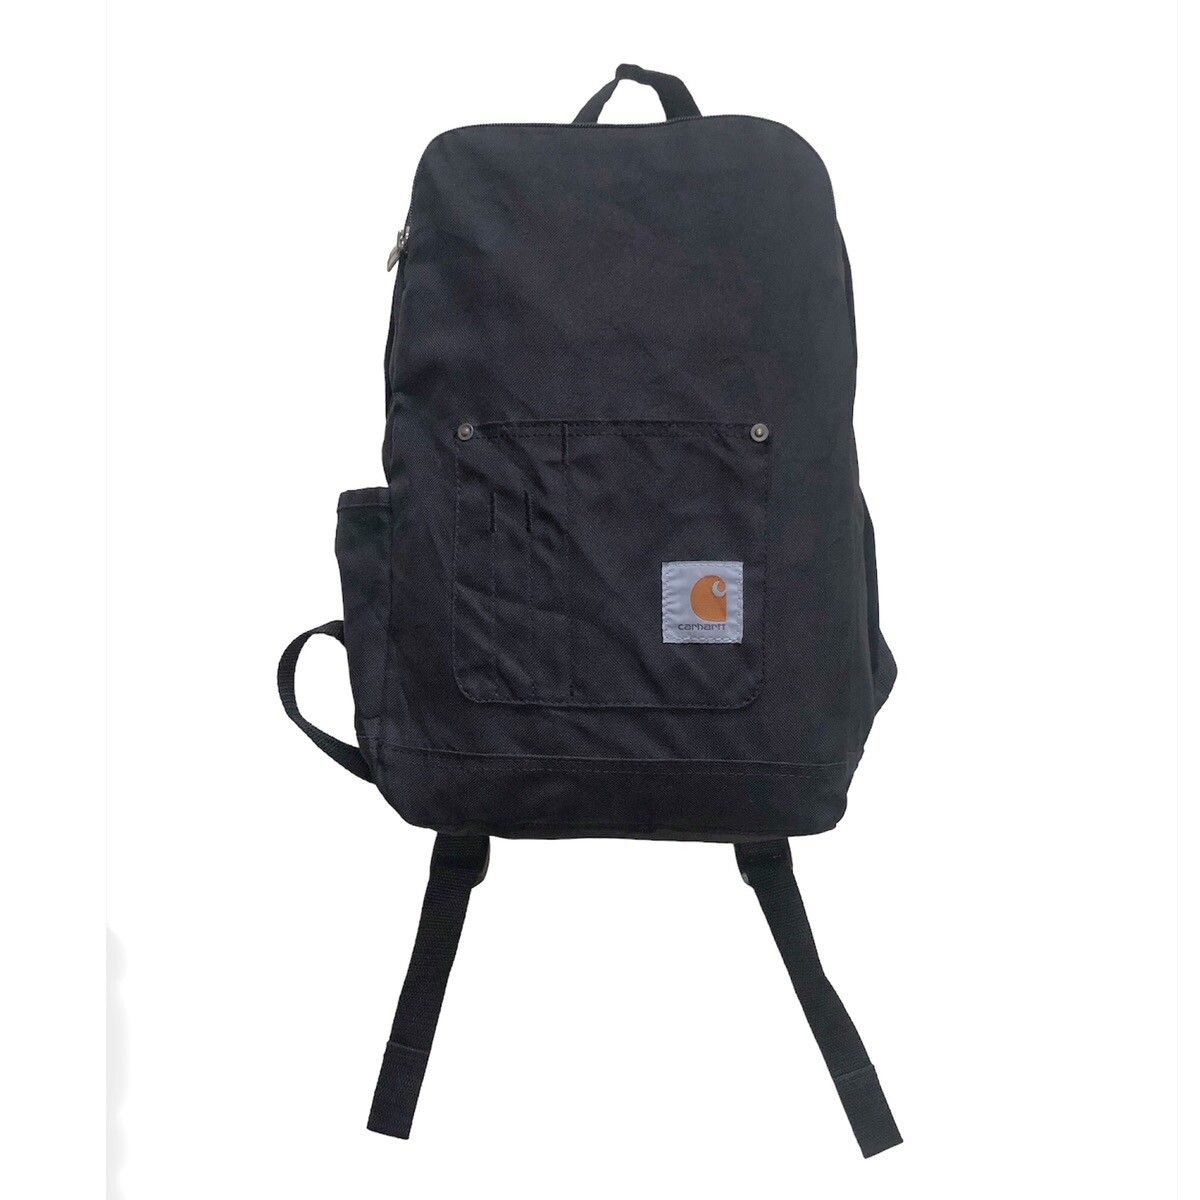 Carhart Wip Backpack - 1